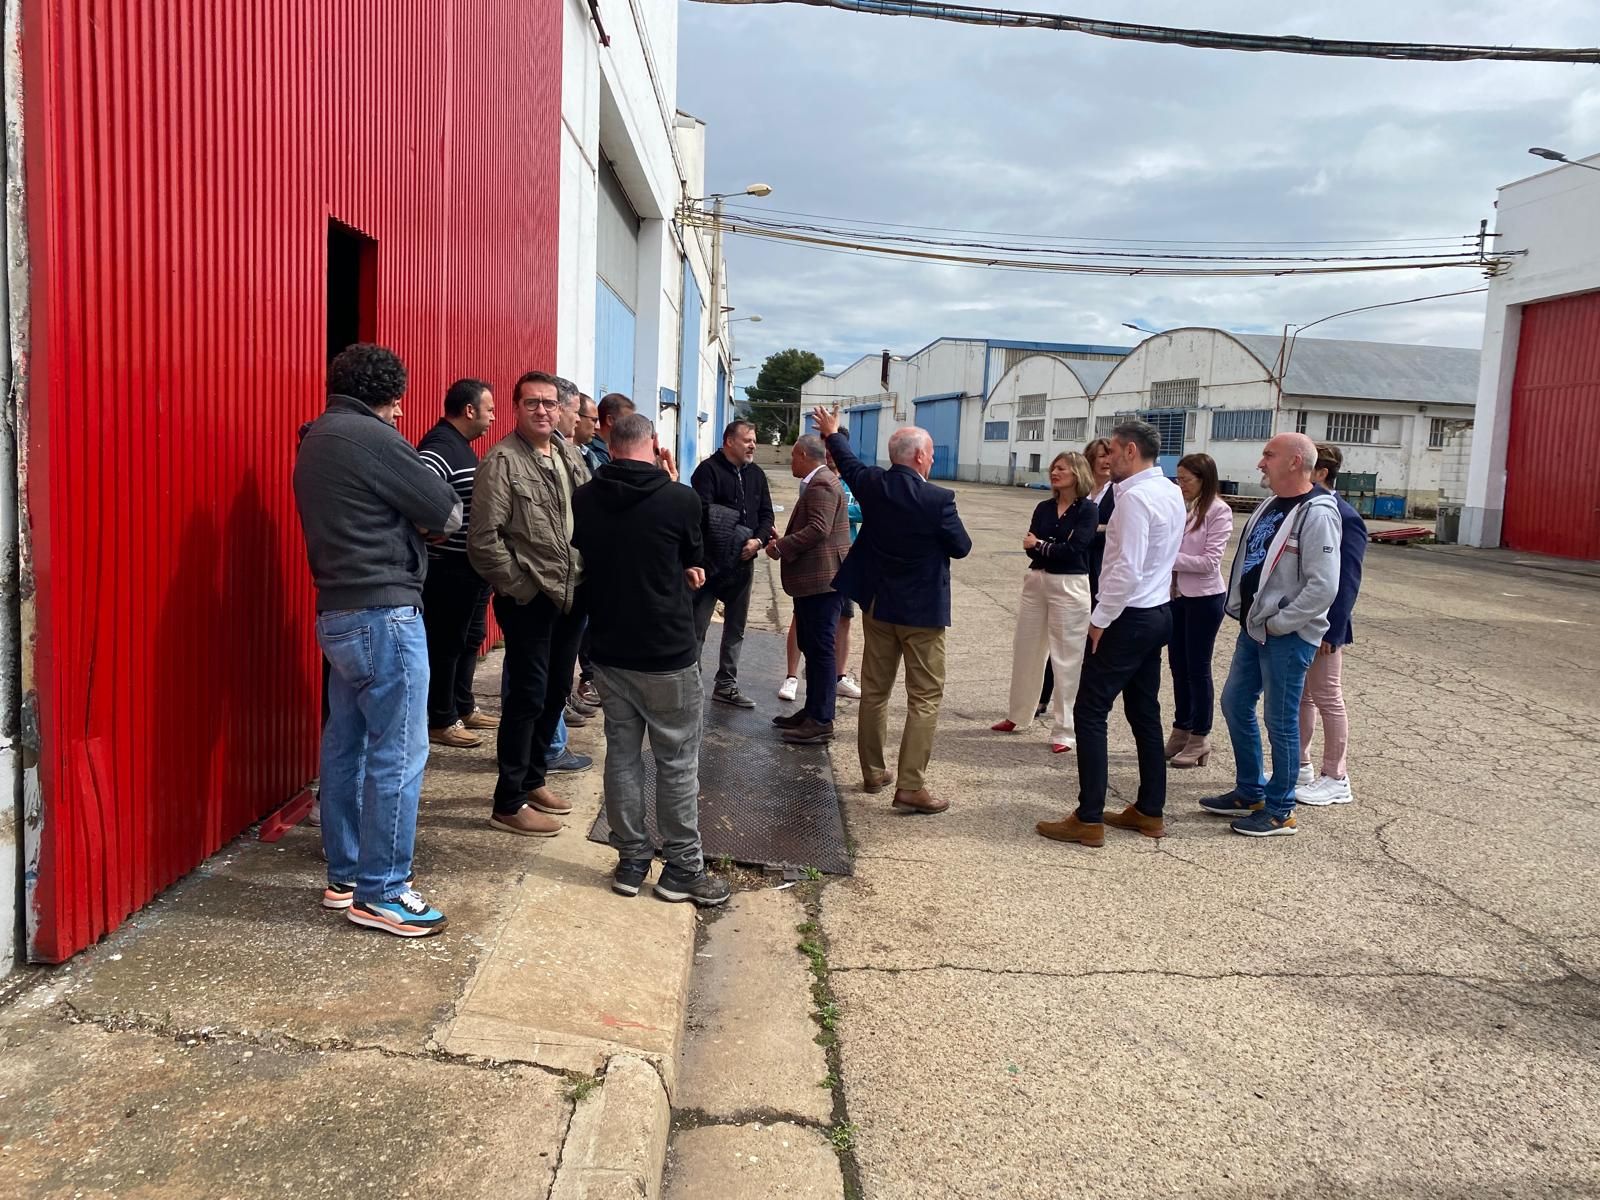 En imágenes | Visita de los nuevos propietarios de Leciñena a los trabajadores e instalaciones de la empresa